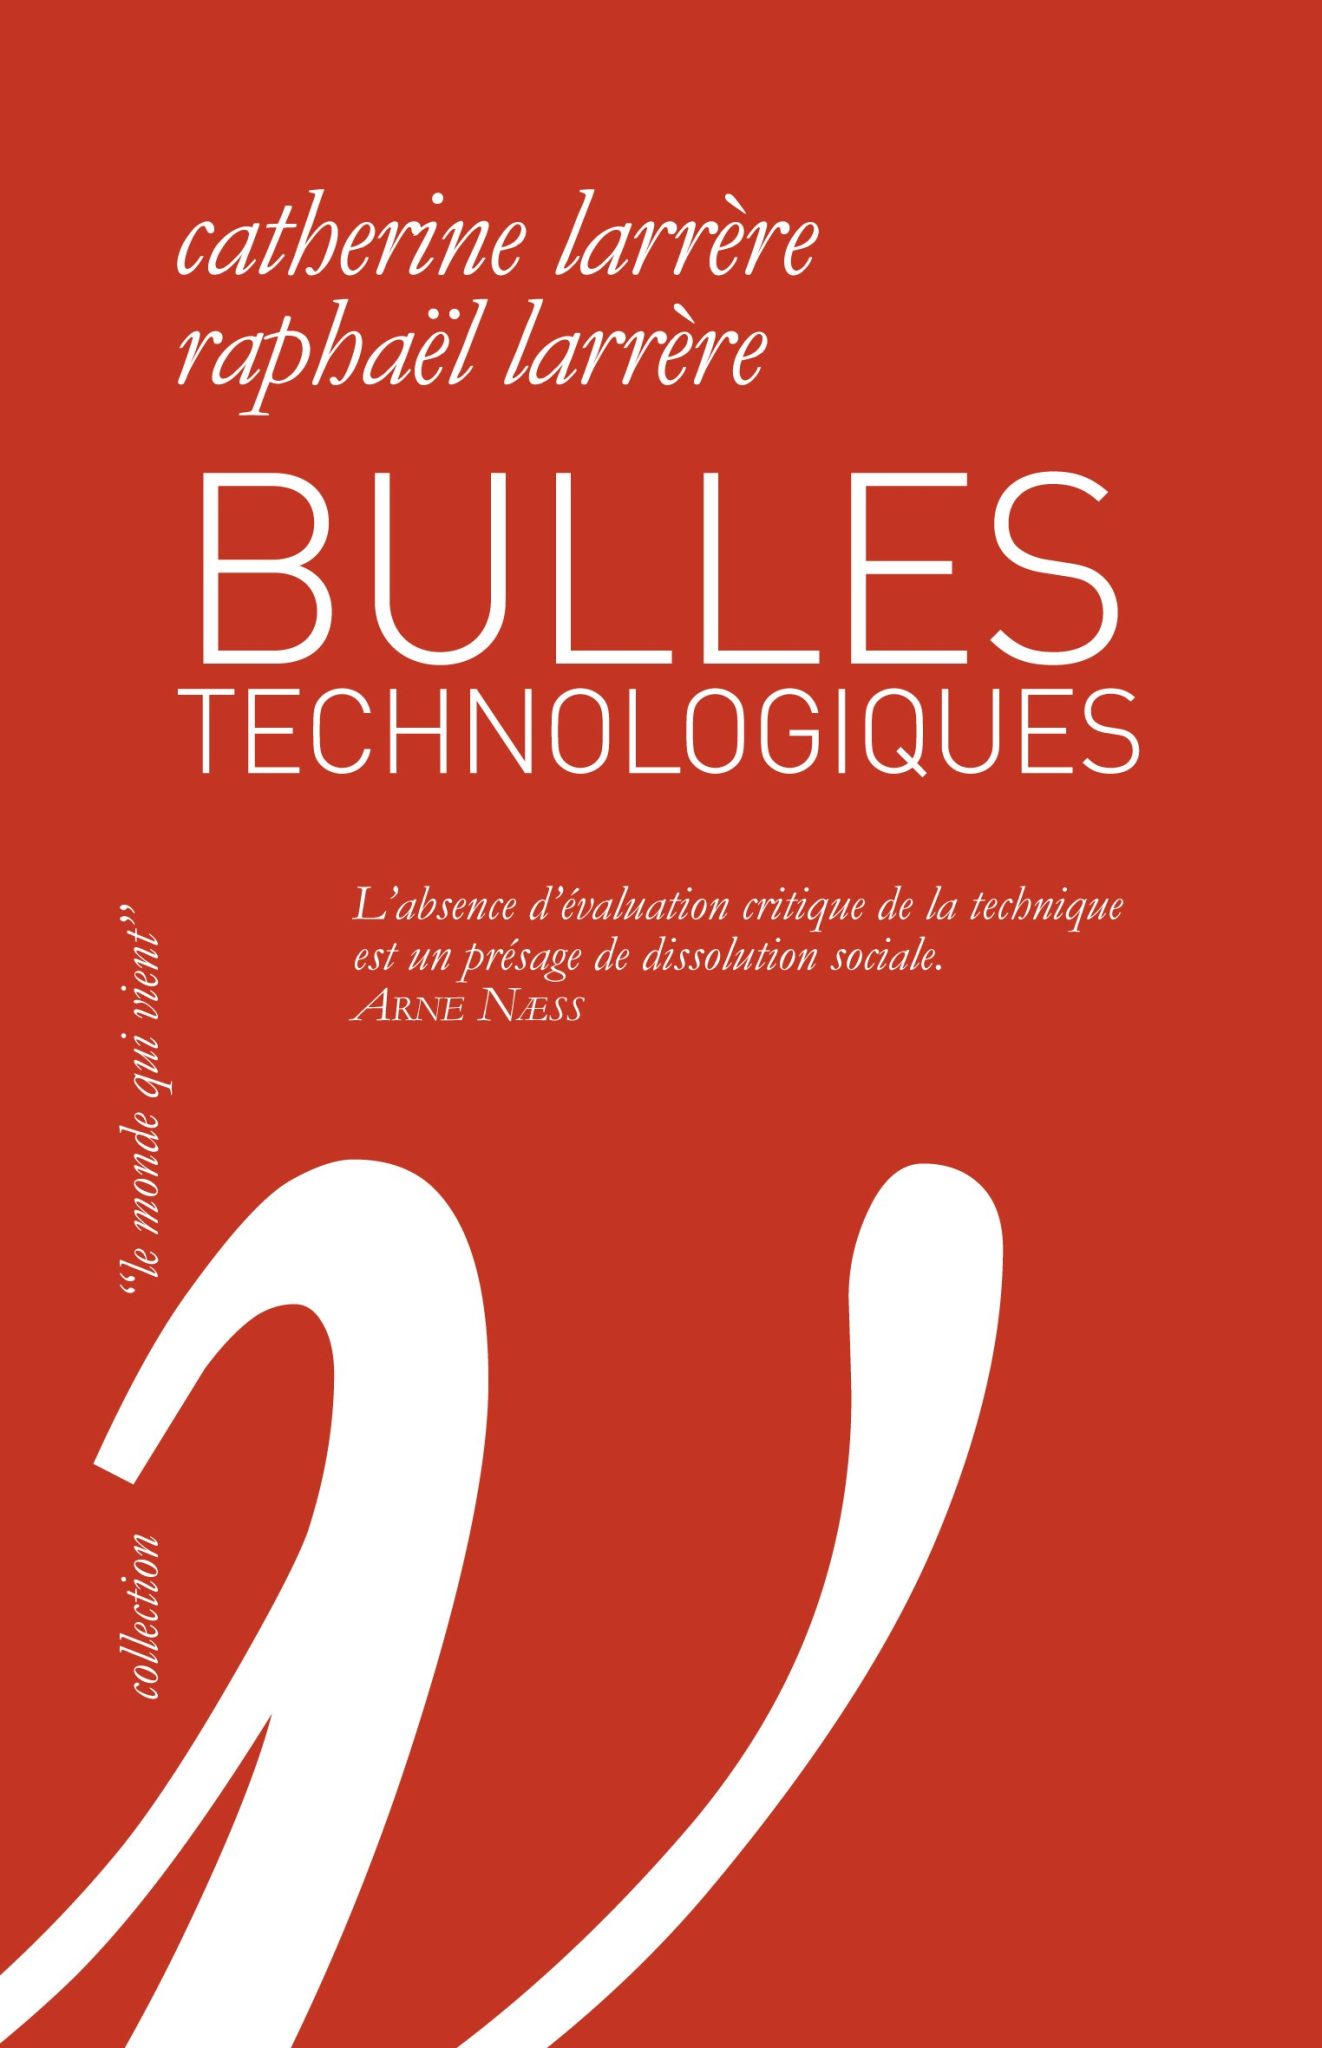 Bulles technologiques, de Catherine Larrère et Raphaël Larrère